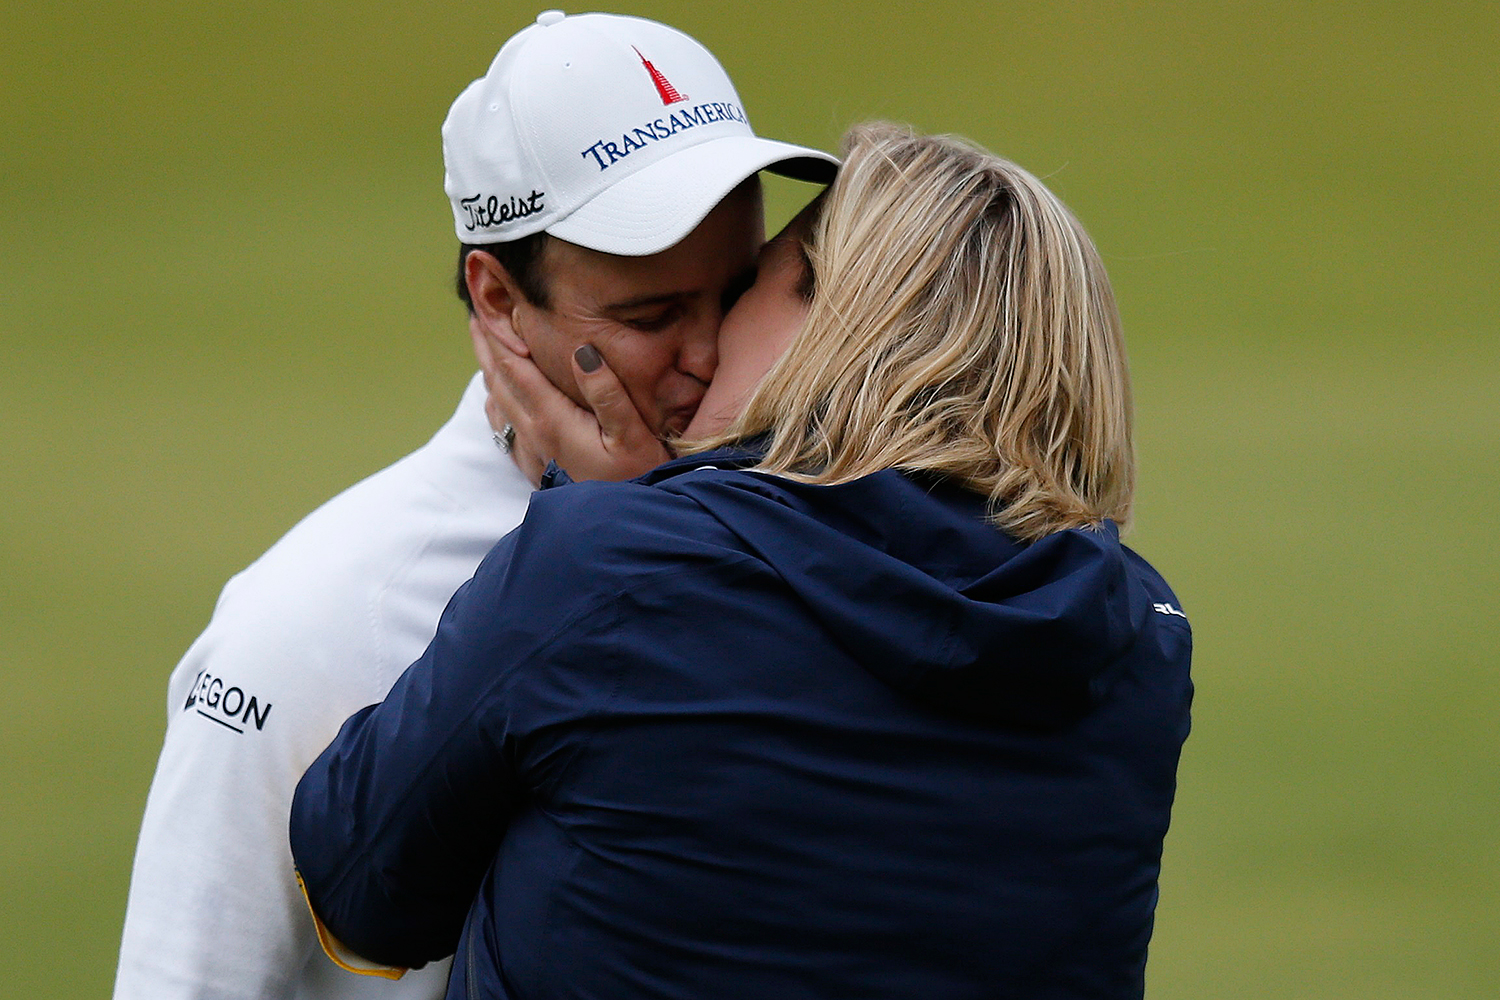 El beso del triunfo: Zach Johnson gana el Abierto Británico de golf tras un desempate